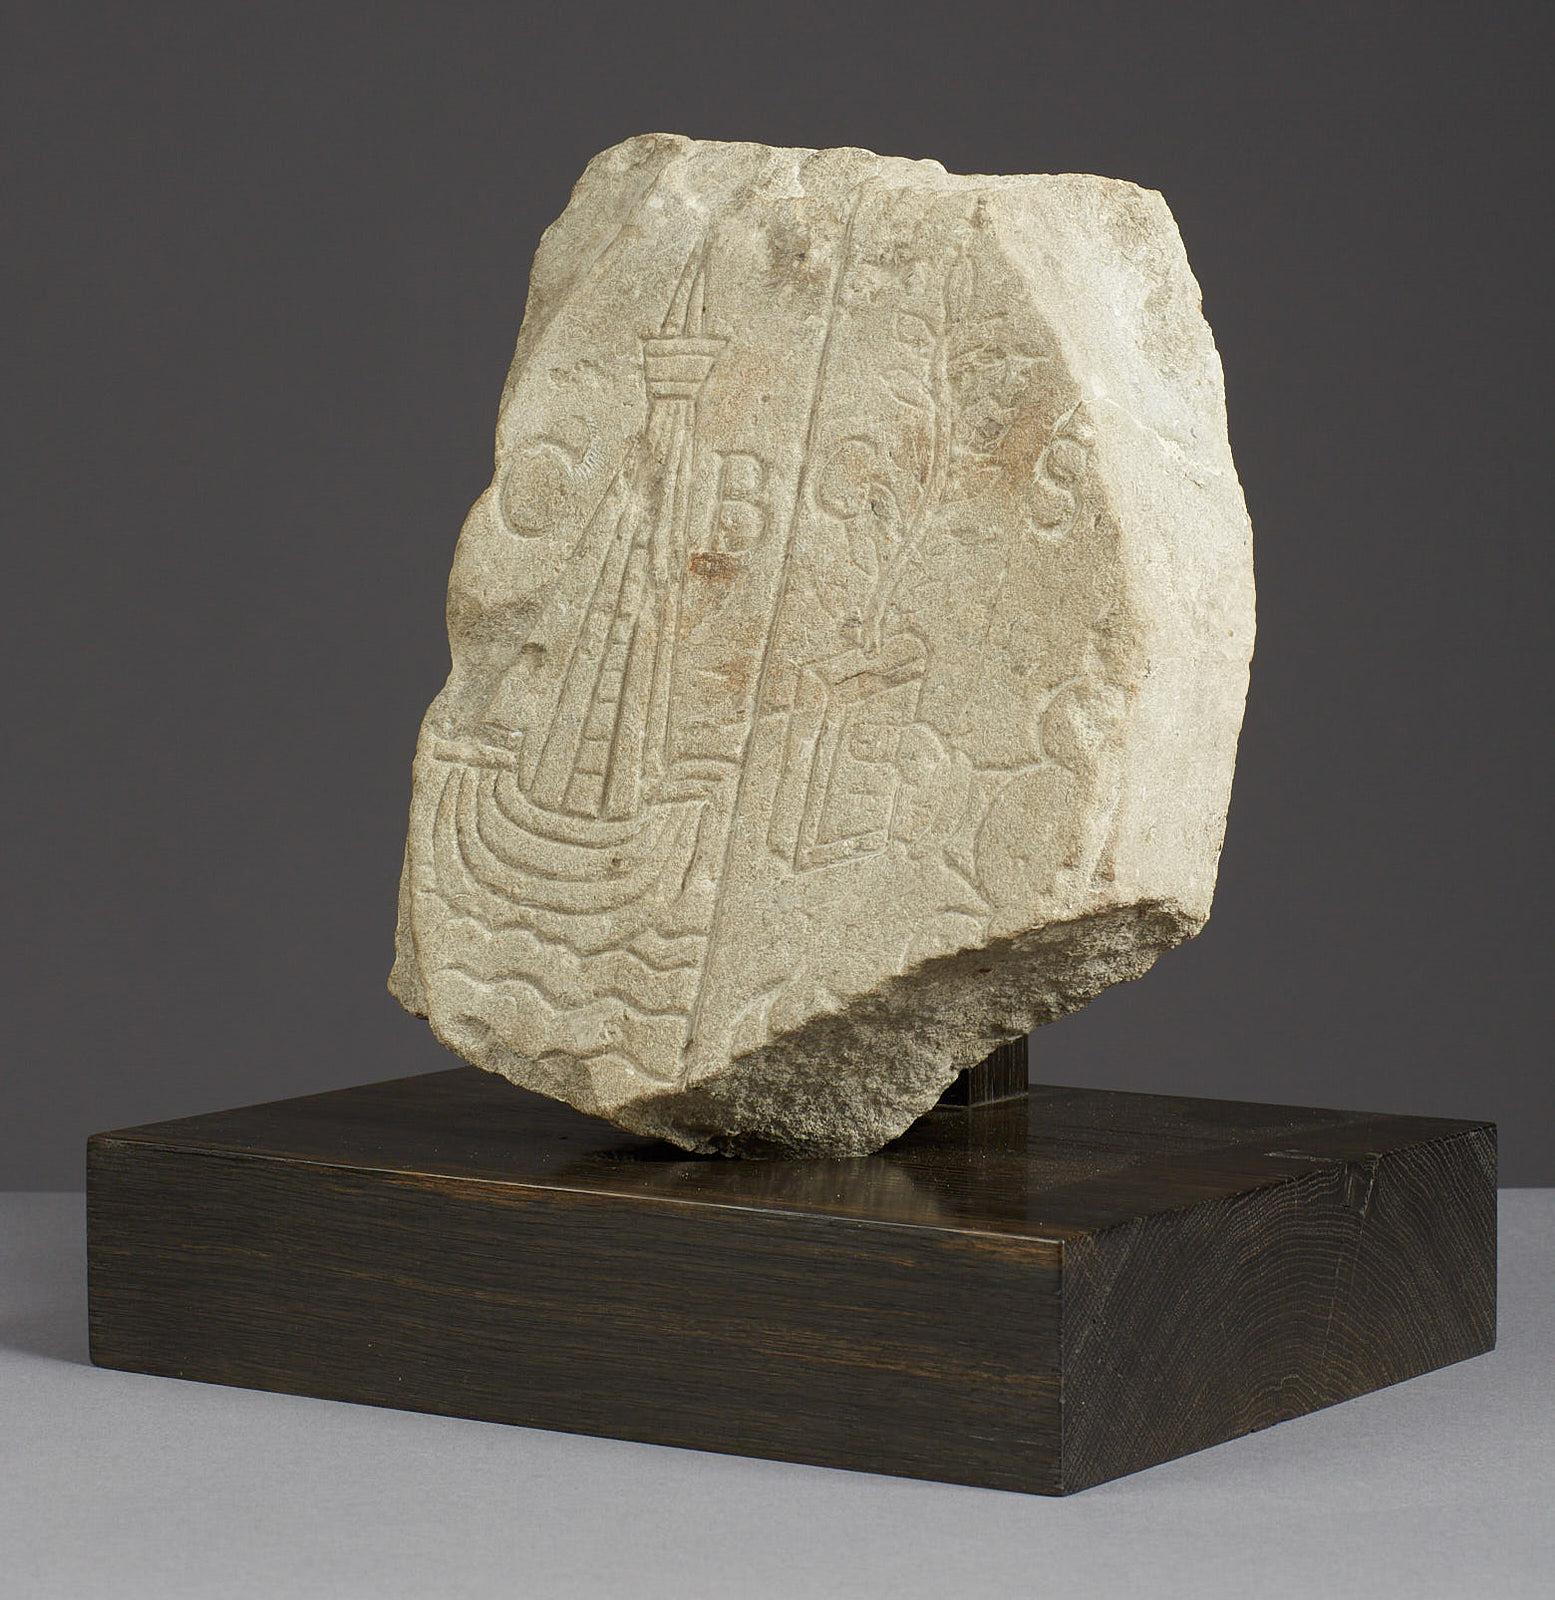 British Medieval Limestone Commemorative Stone Marker, English, circa 1450-1550